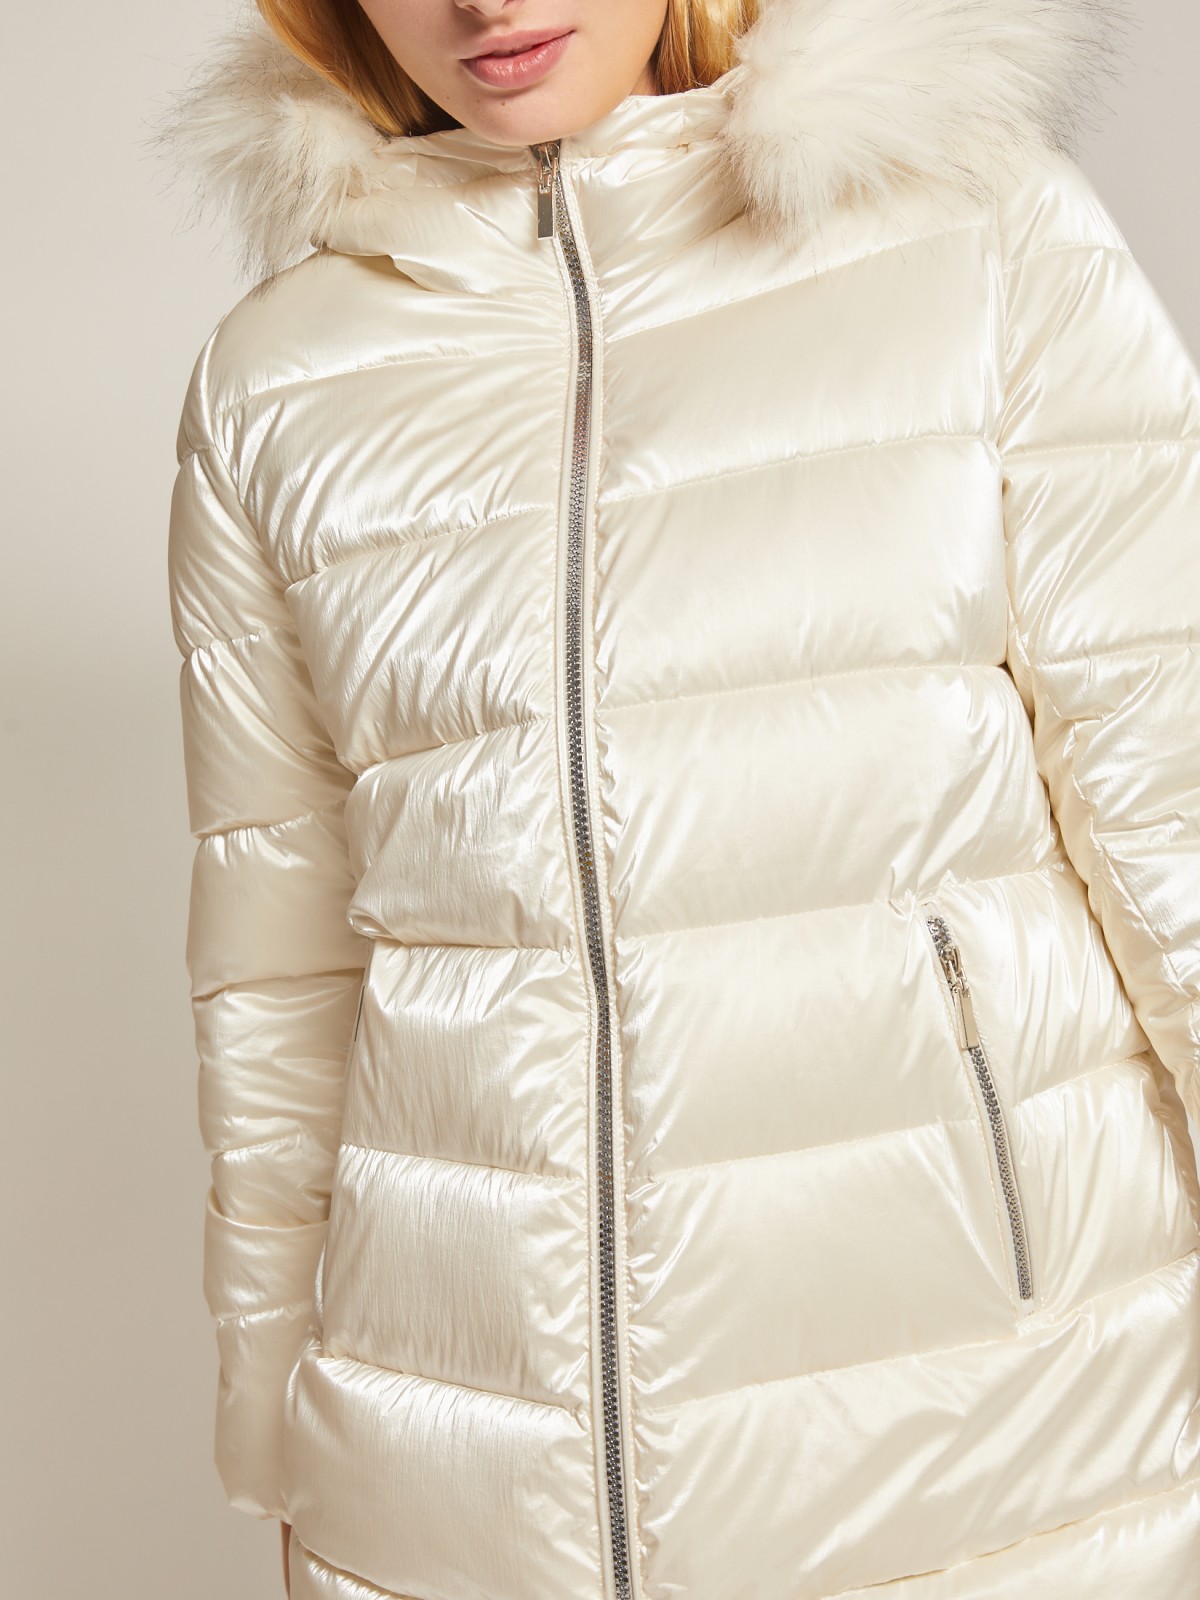 Утеплённая куртка с меховой опушкой zolla 020345112724, цвет молоко, размер XS - фото 3